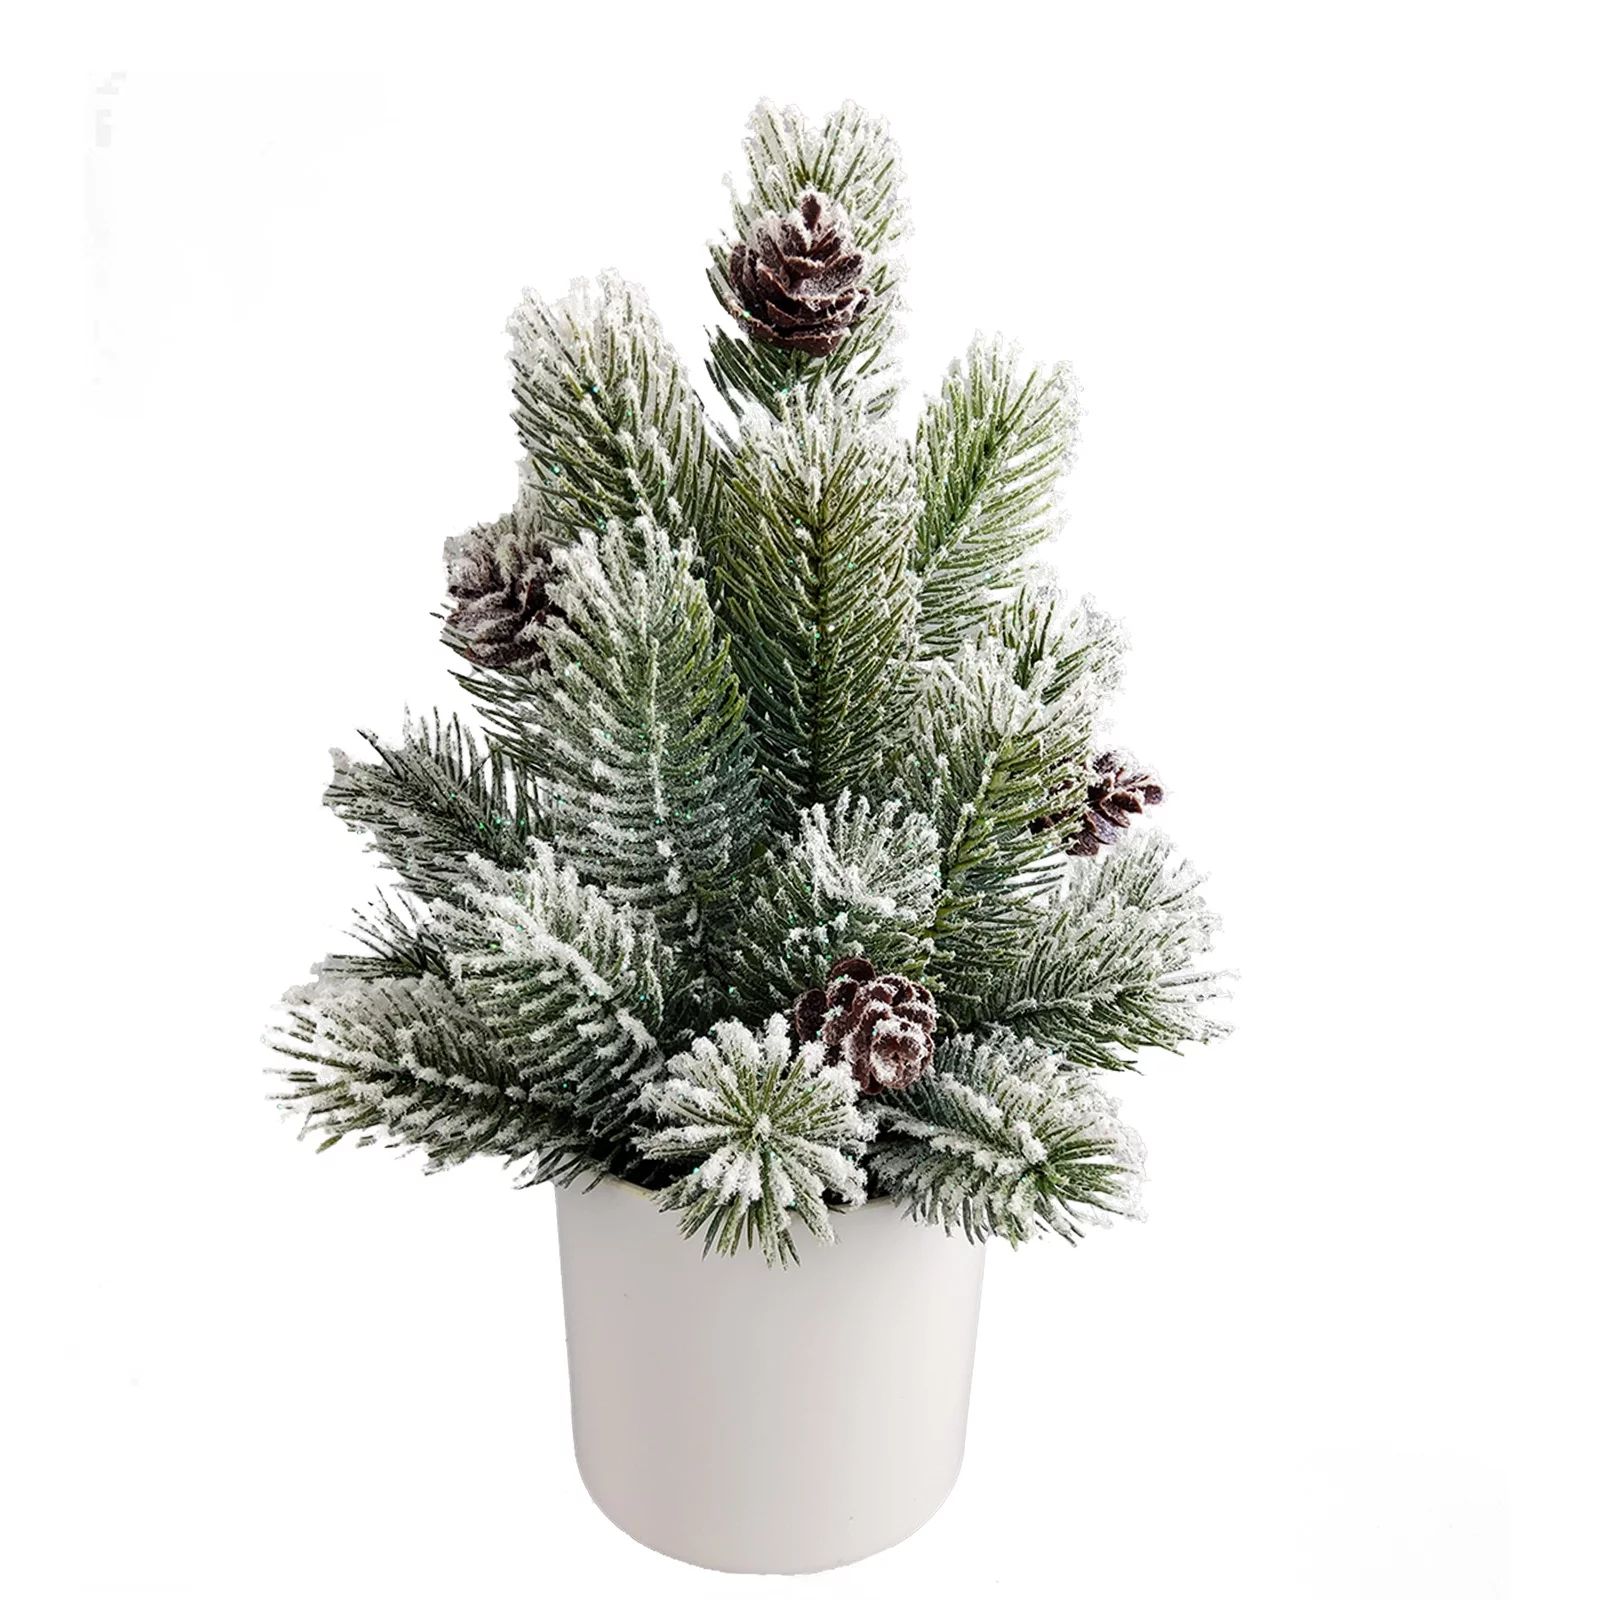 Mainstays 10.5in Indoor Artificial Pine Tree in Pot with Snow | Walmart (US)